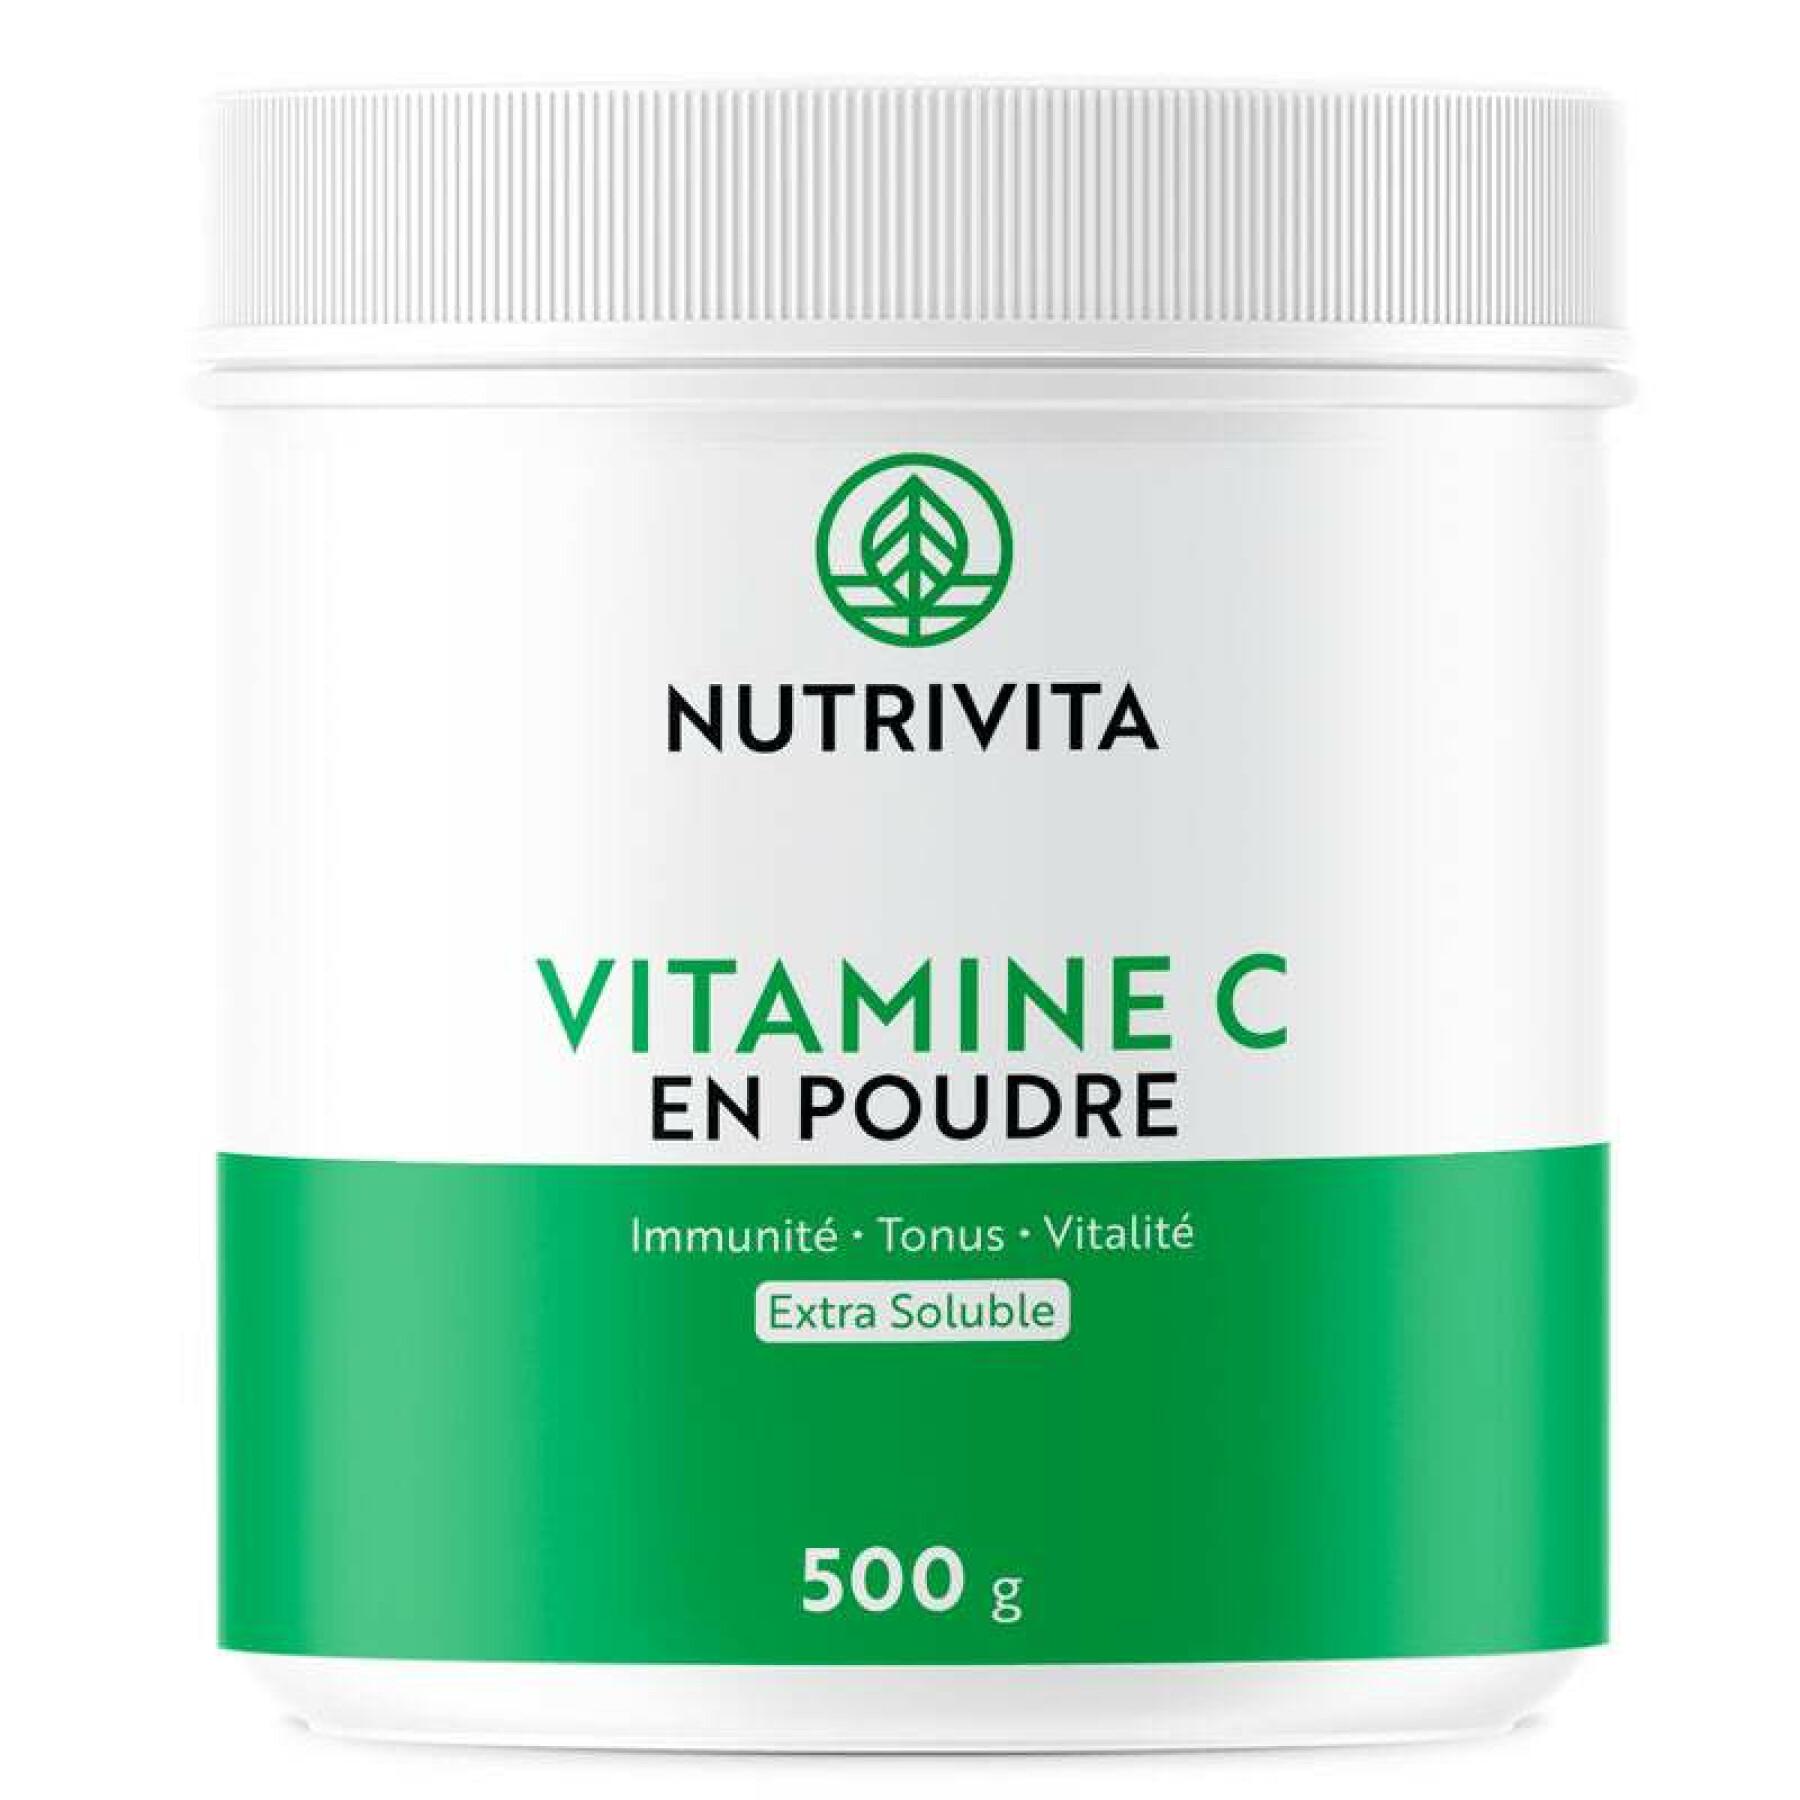 Food supplement vitamin c in powder 500g Nutrivita